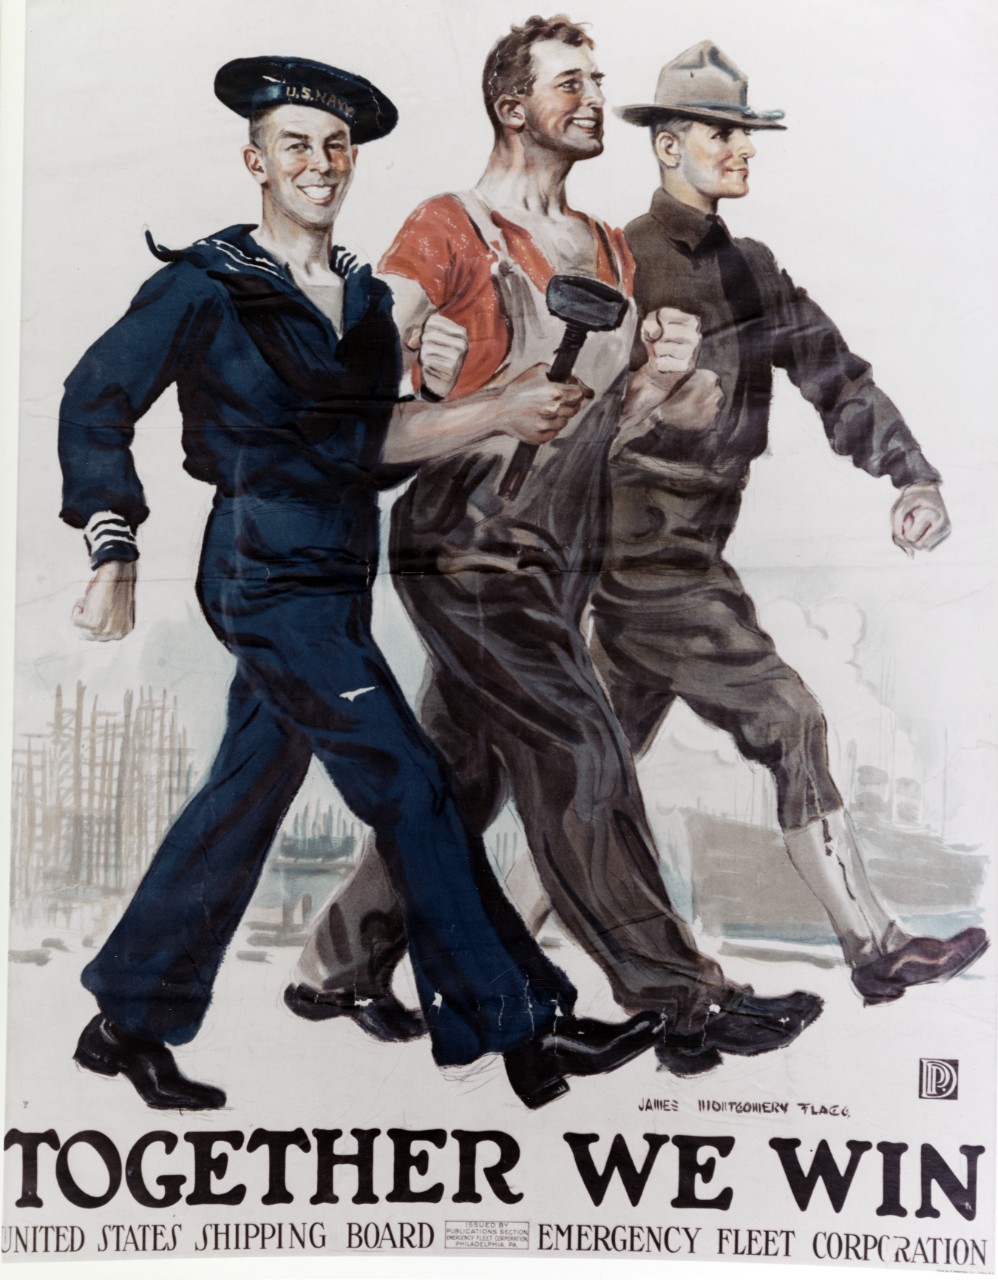 World War I shipping board poster